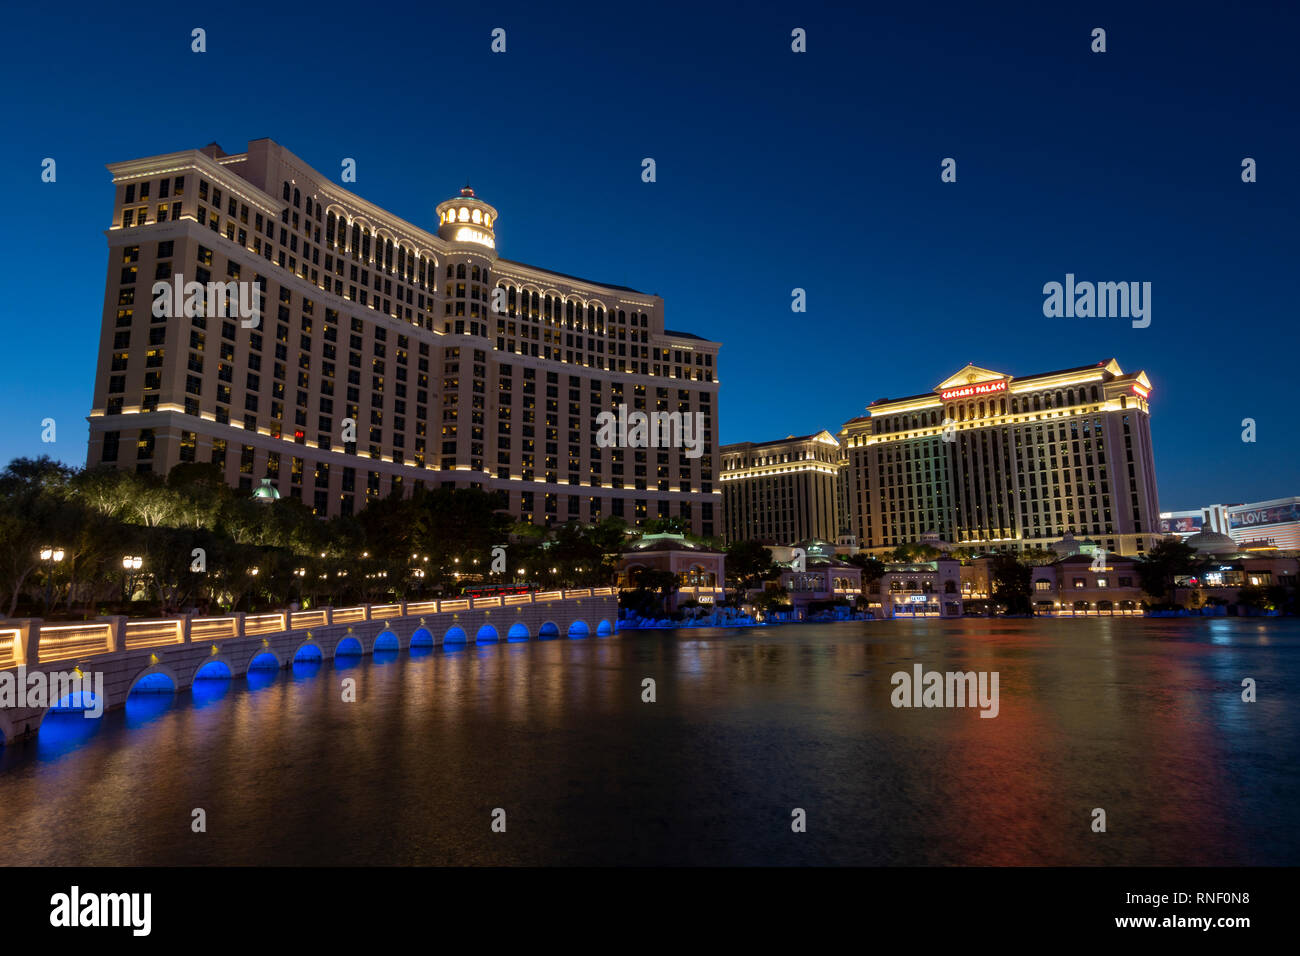 Il Bellagio Las Vegas e Caesars Palace Las Vegas Hotel & Casino di notte sulla Strip di Las Vegas, Nevada, Stati Uniti. Foto Stock